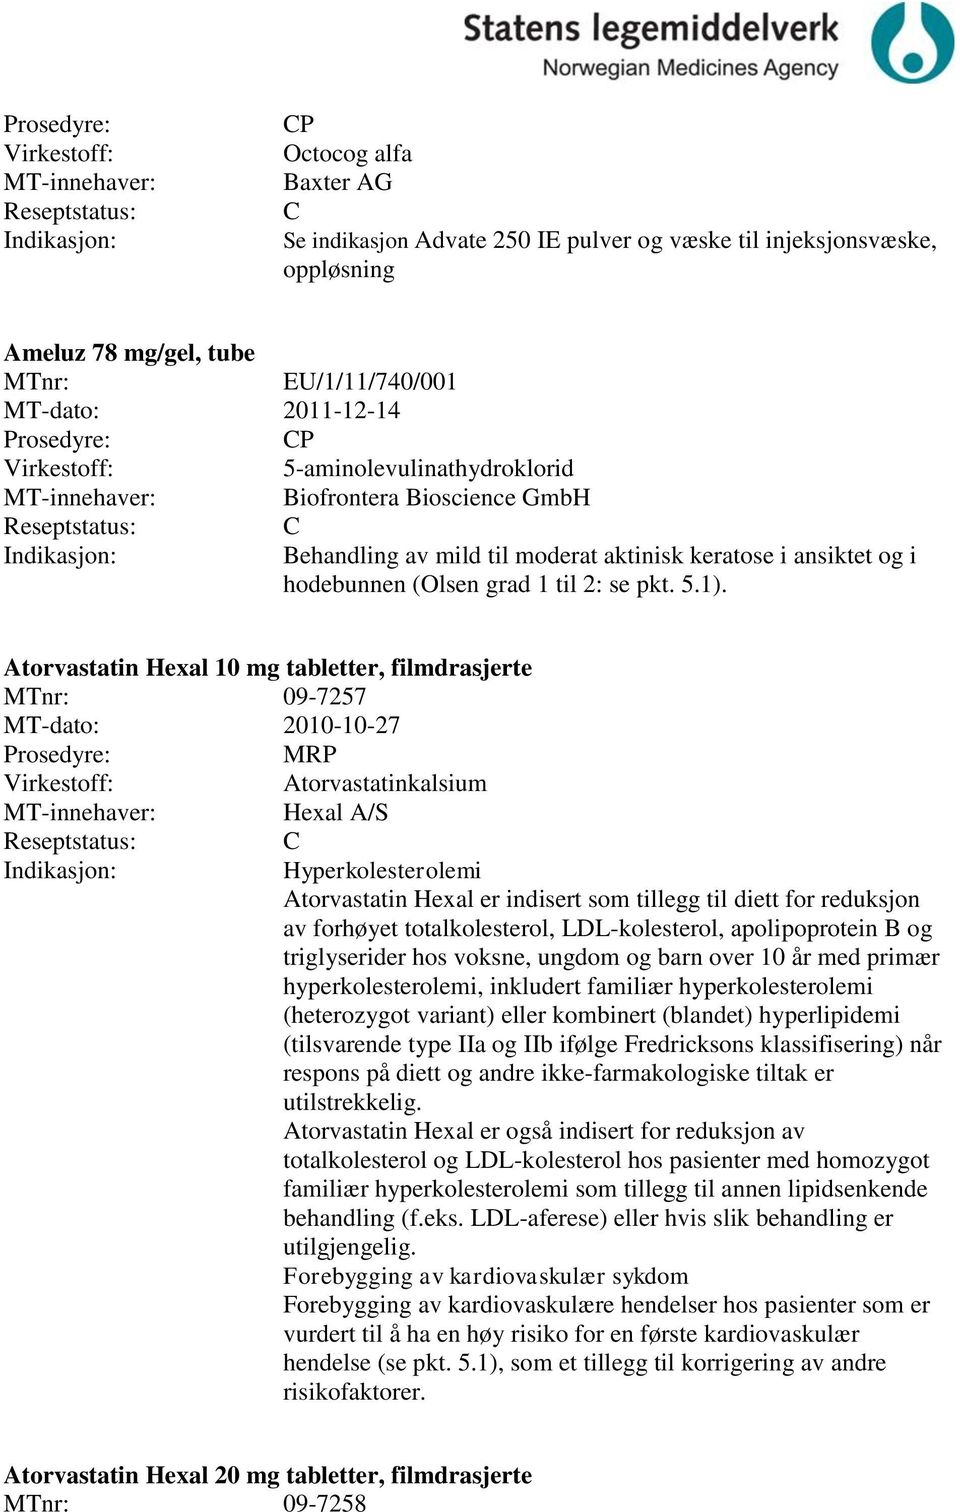 Atorvastatin Hexal 10 mg tabletter, filmdrasjerte MTnr: 09-7257 MT-dato: 2010-10-27 Atorvastatinkalsium Hexal A/S Hyperkolesterolemi Atorvastatin Hexal er indisert som tillegg til diett for reduksjon